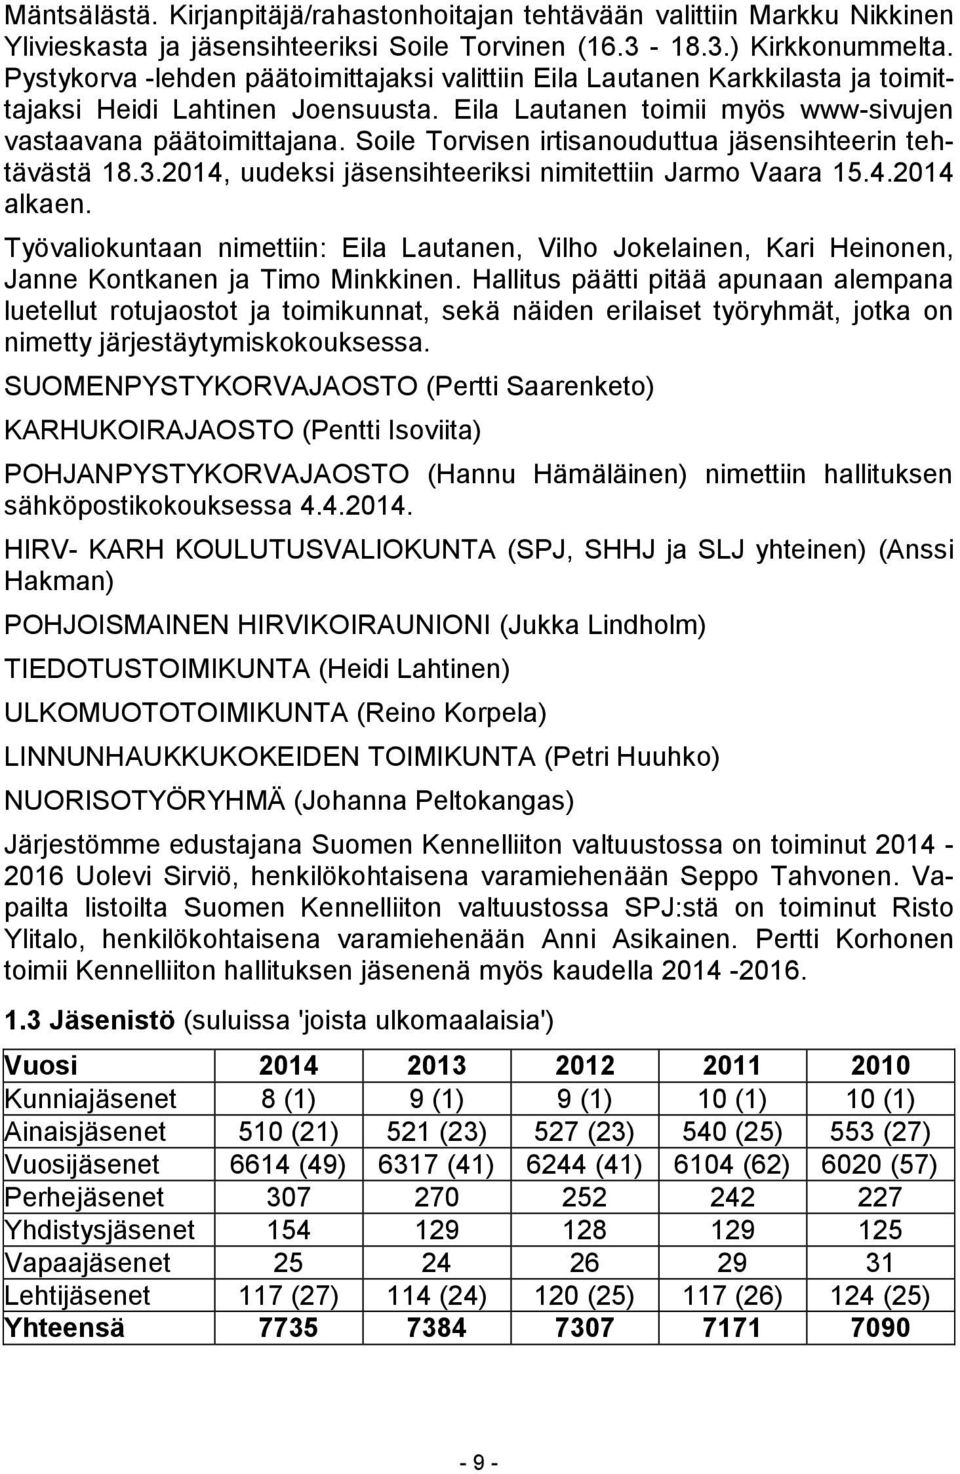 Soile Torvisen irtisanouduttua jäsensihteerin tehtävästä 18.3.2014, uudeksi jäsensihteeriksi nimitettiin Jarmo Vaara 15.4.2014 alkaen.